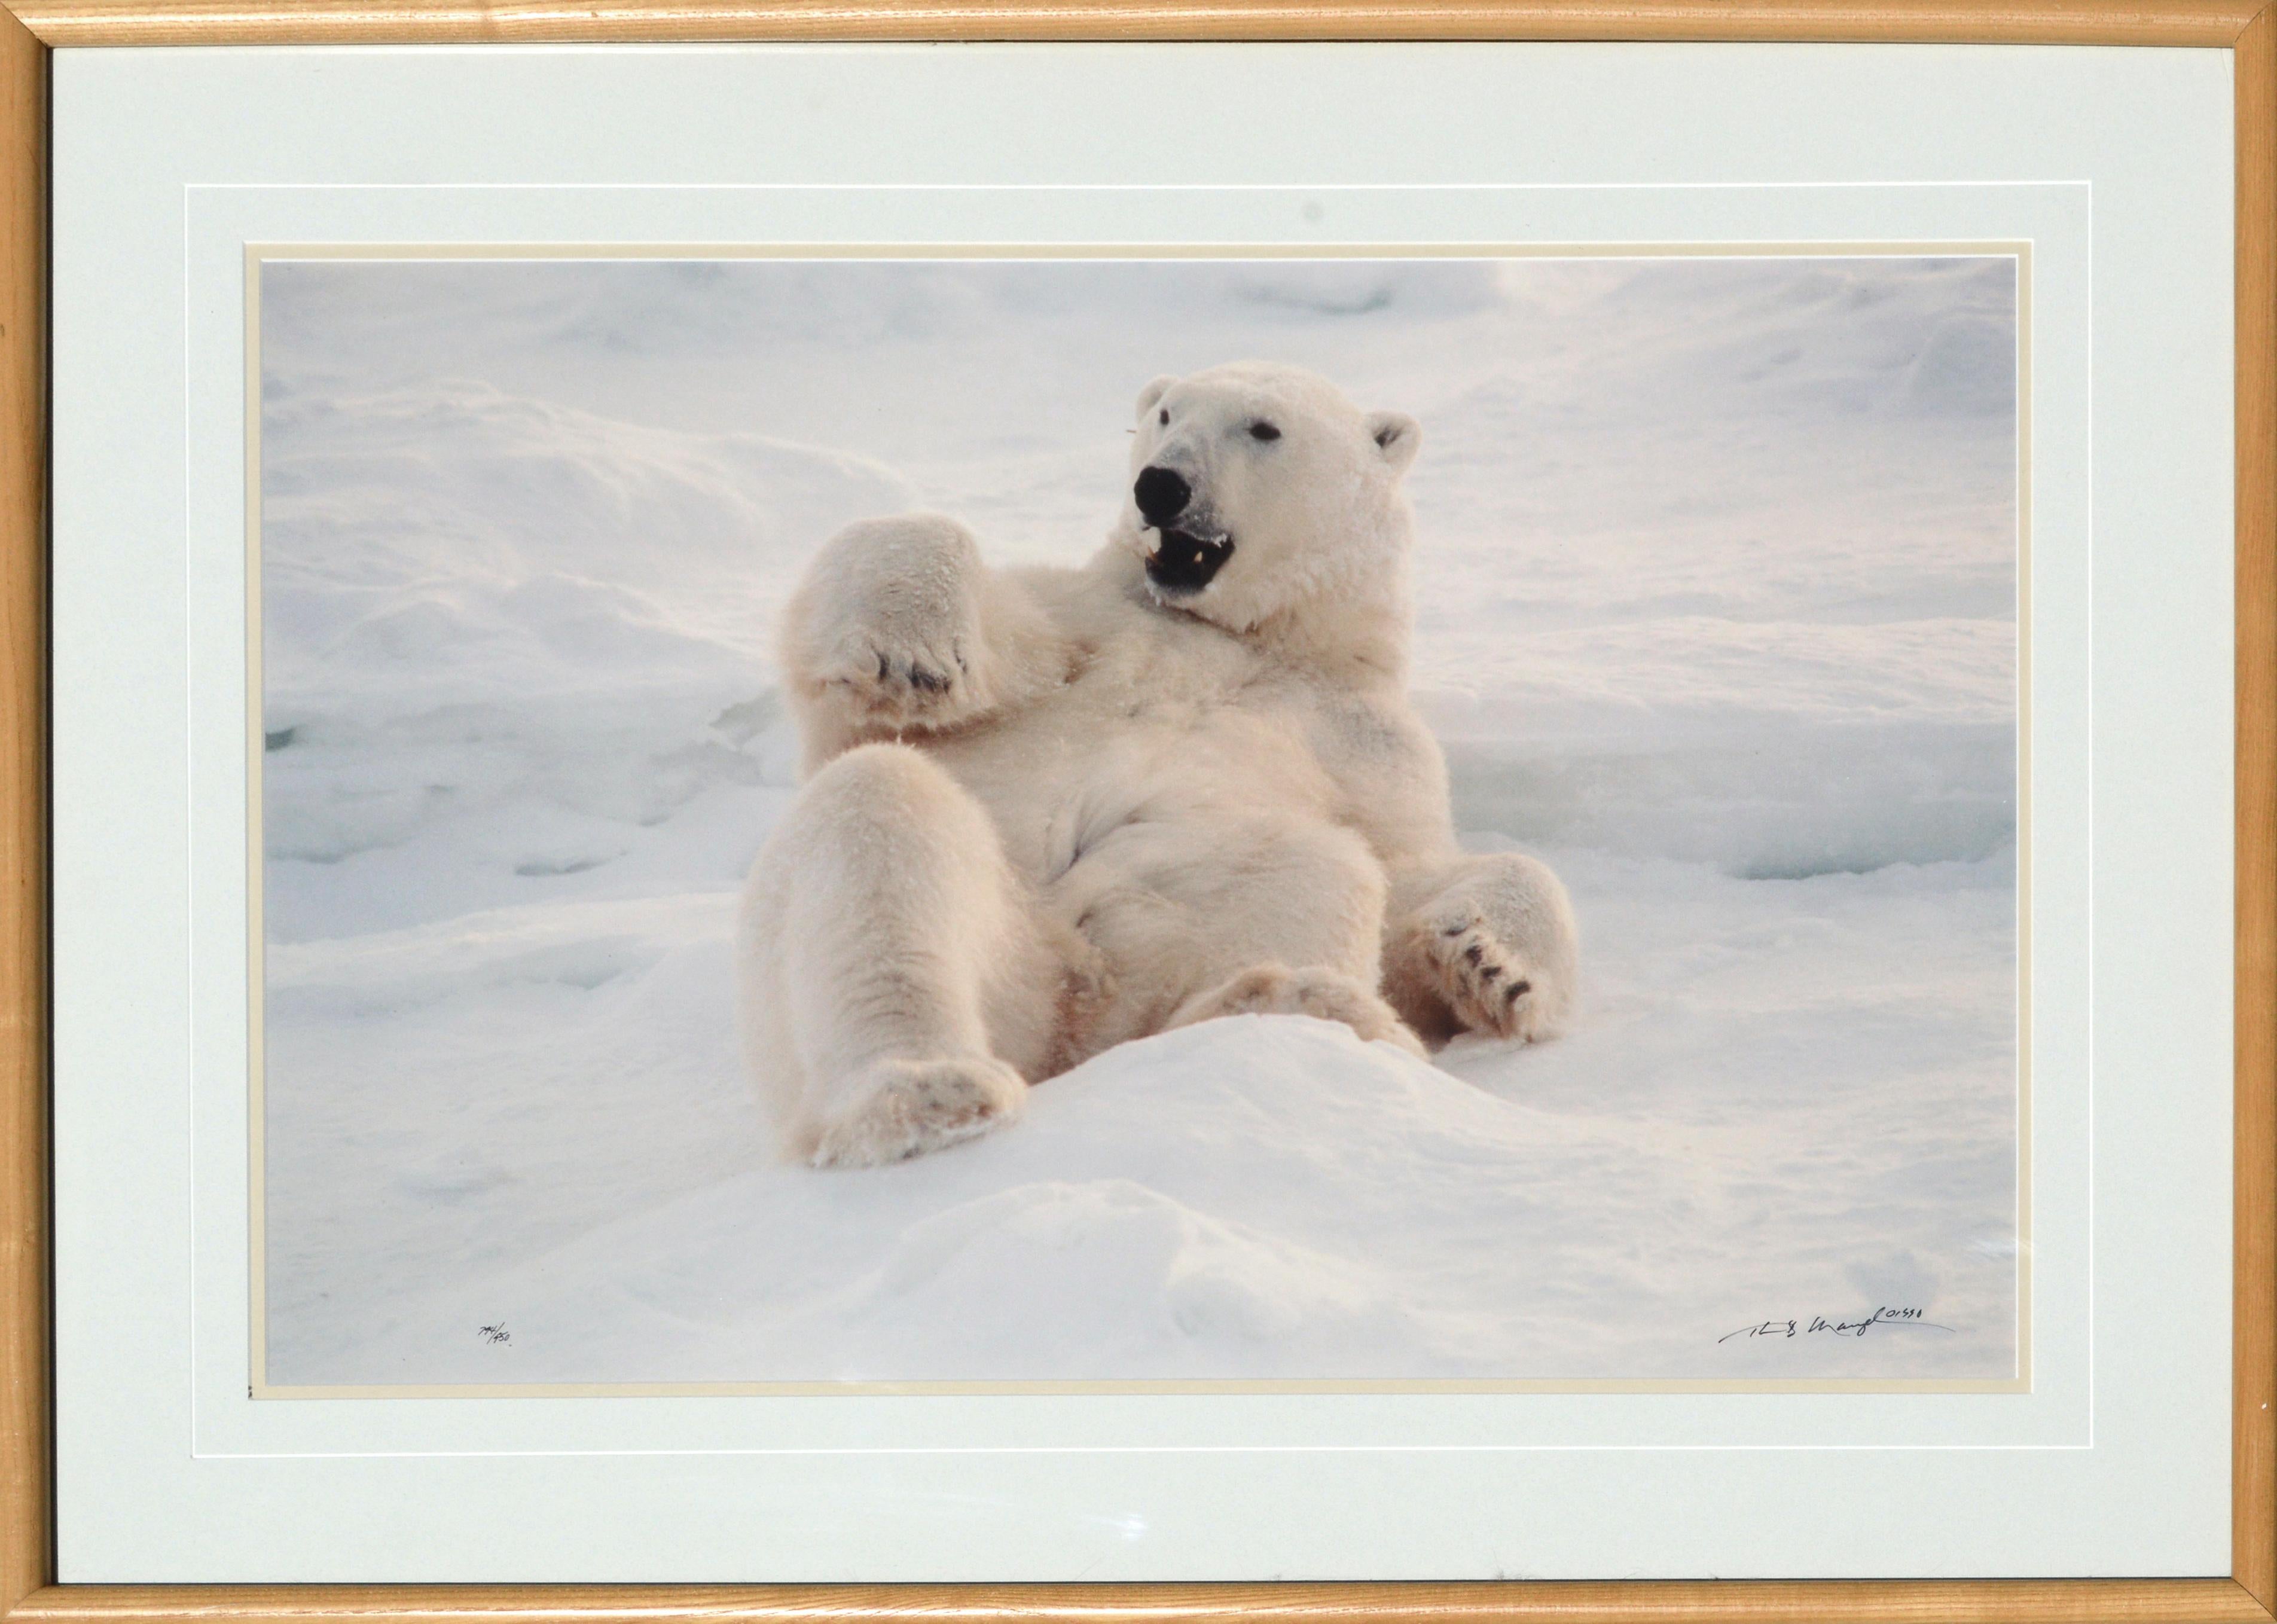 Color Photograph Thomas Mangelsen - Photographie ours polaire Feels Good signée et numérotée, édition limitée 